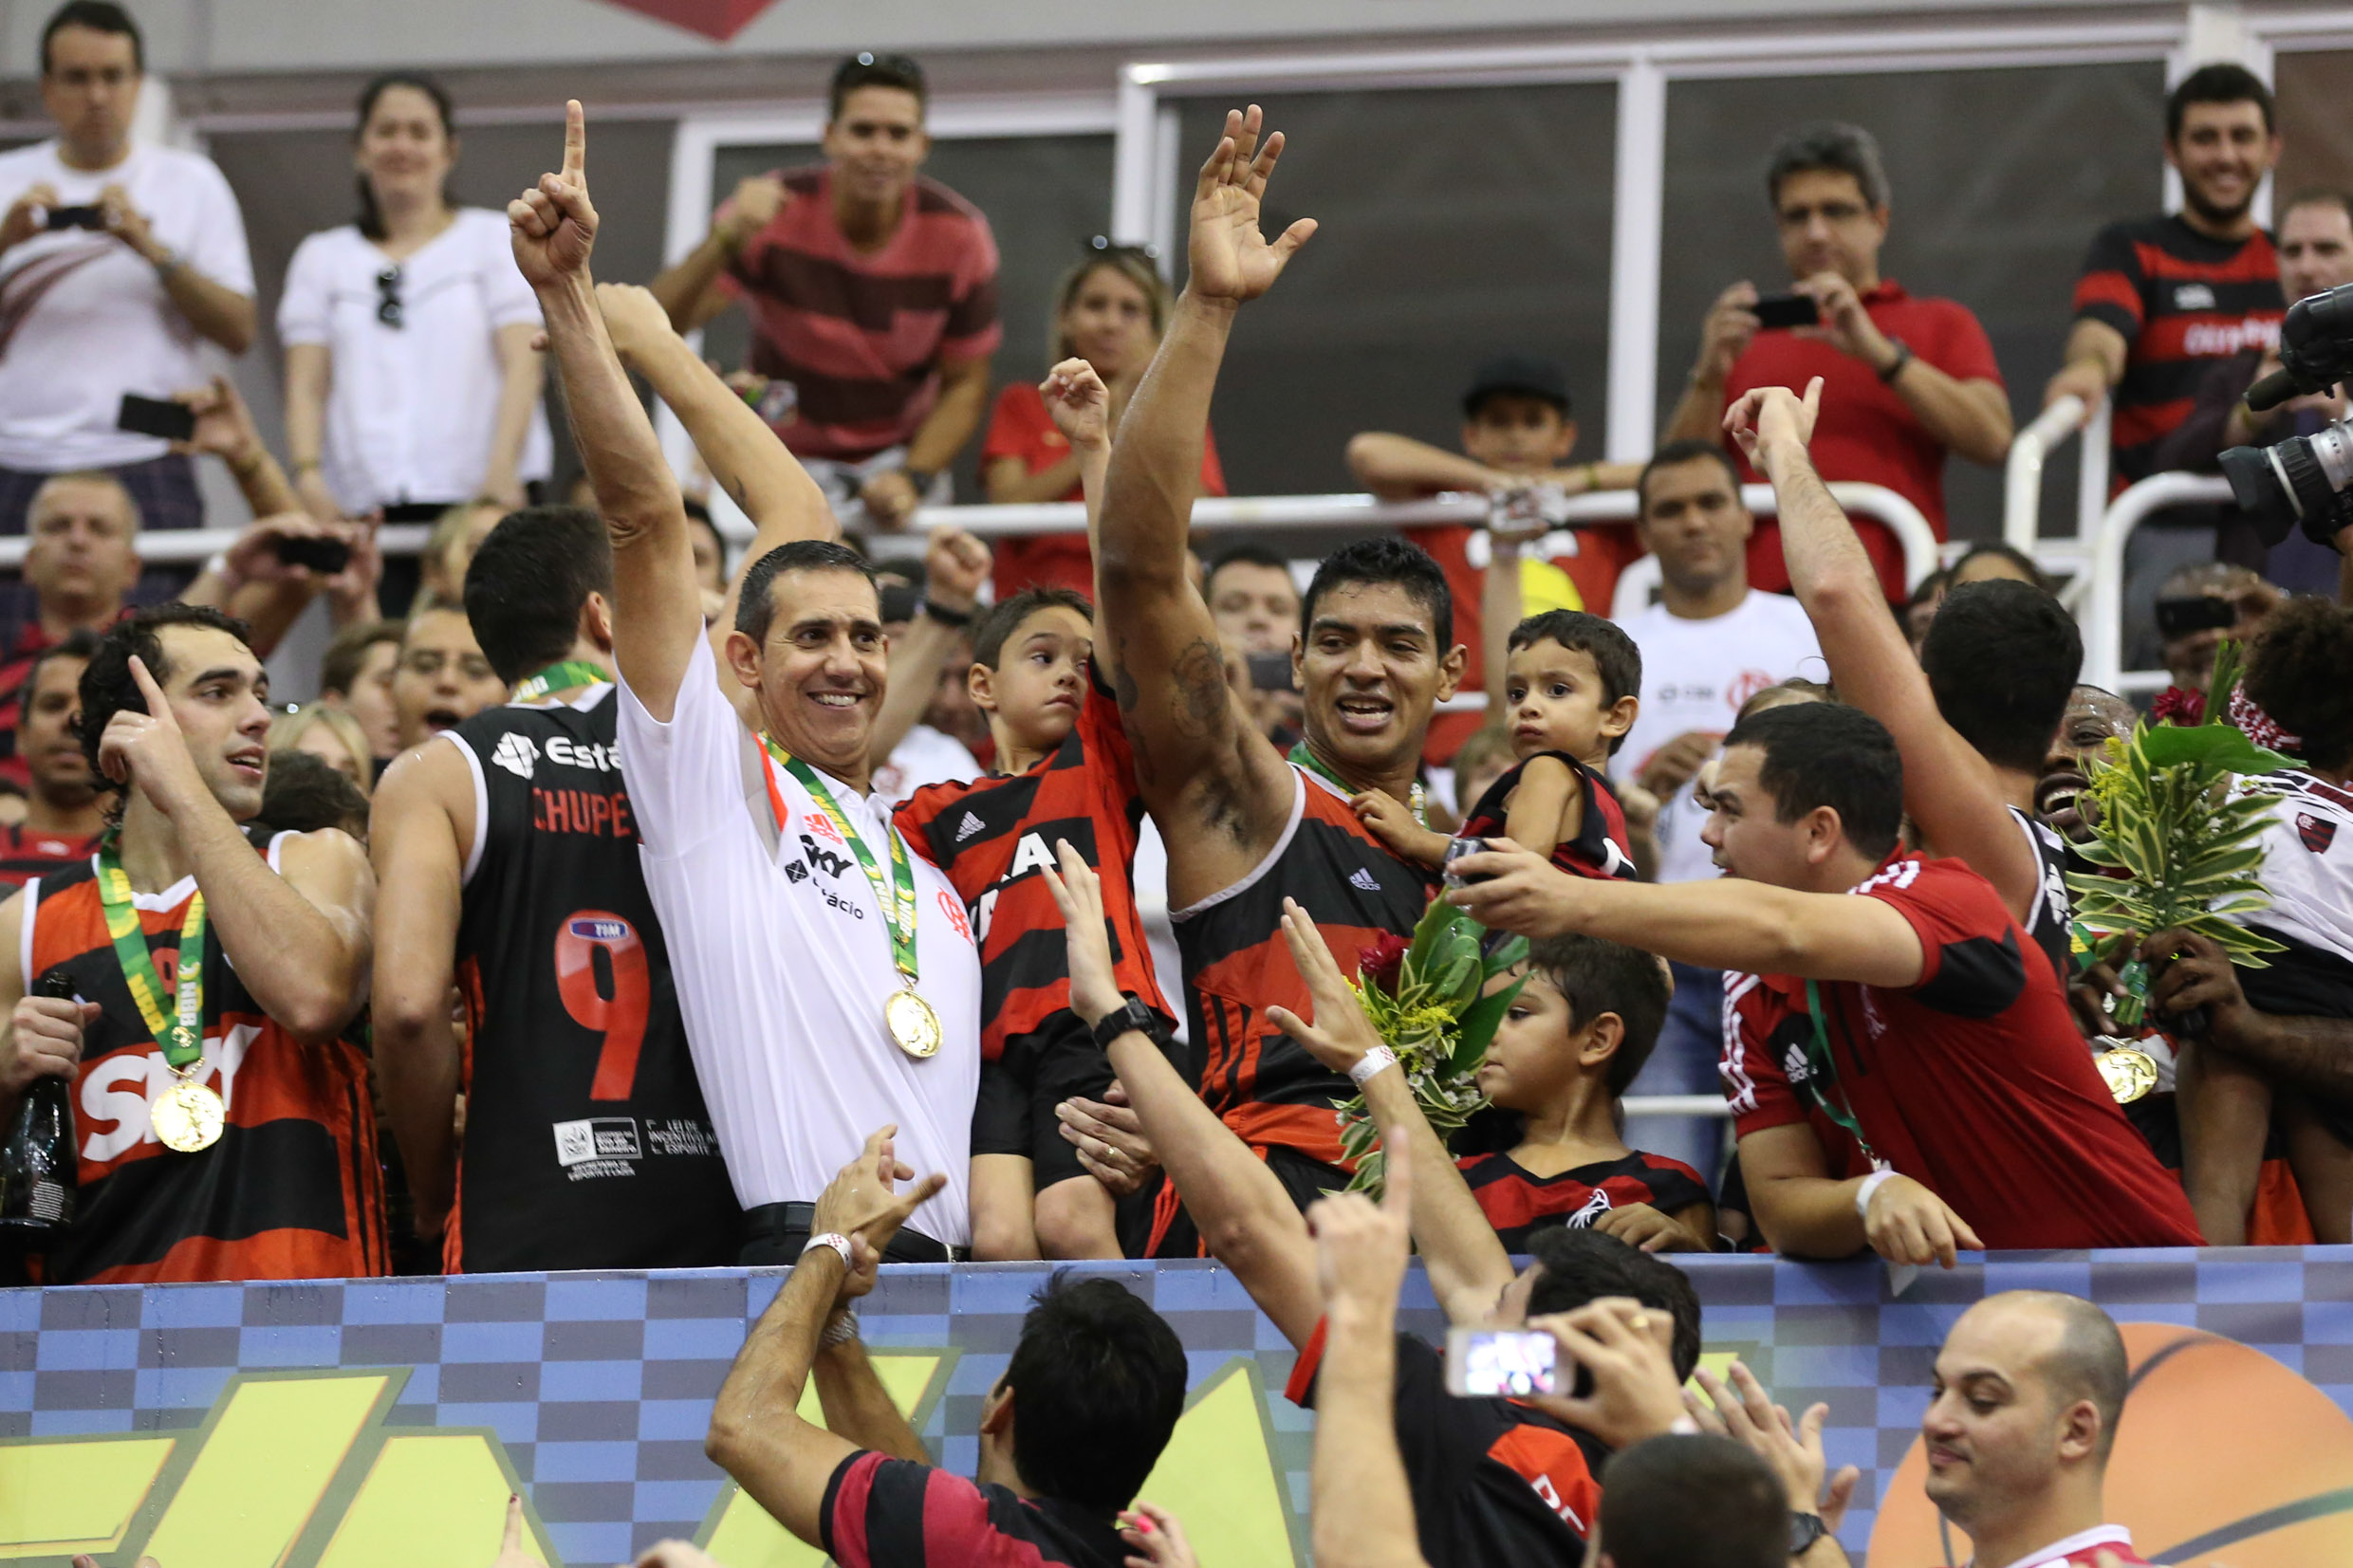 Comemoração do Flamengo